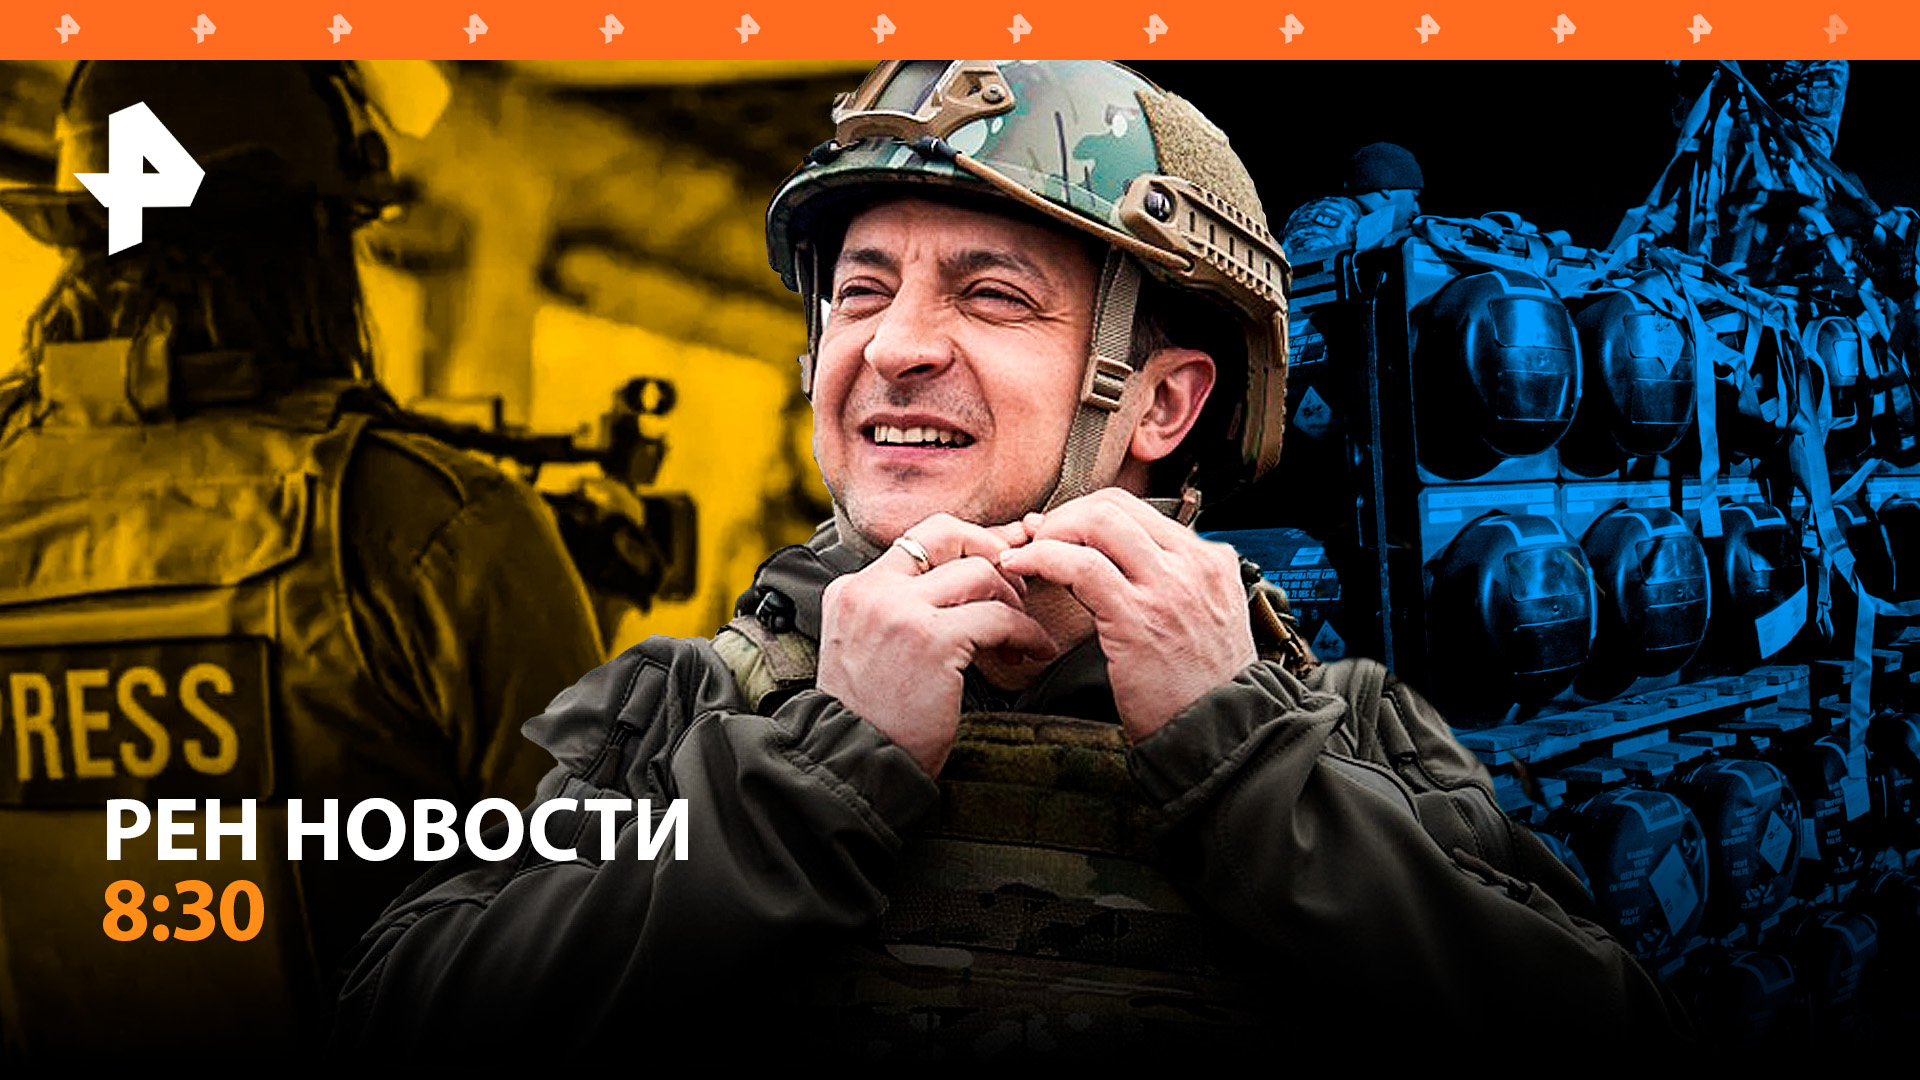 Украинские власти открыли охоту на своих журналистов / РЕН Новости 8:30, 21.04.24